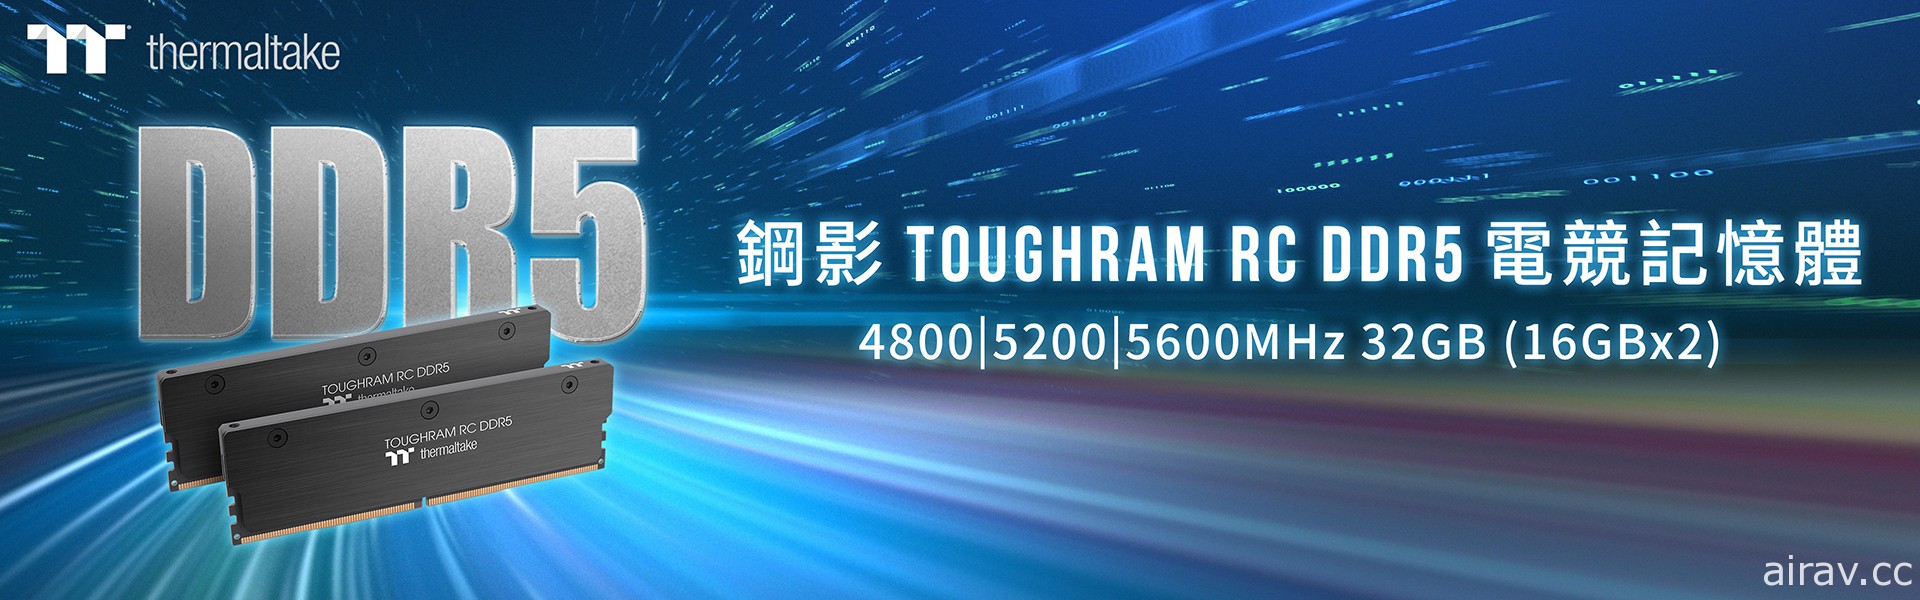 曜越钢影 TOUGHRAM RC DDR5 内存上市